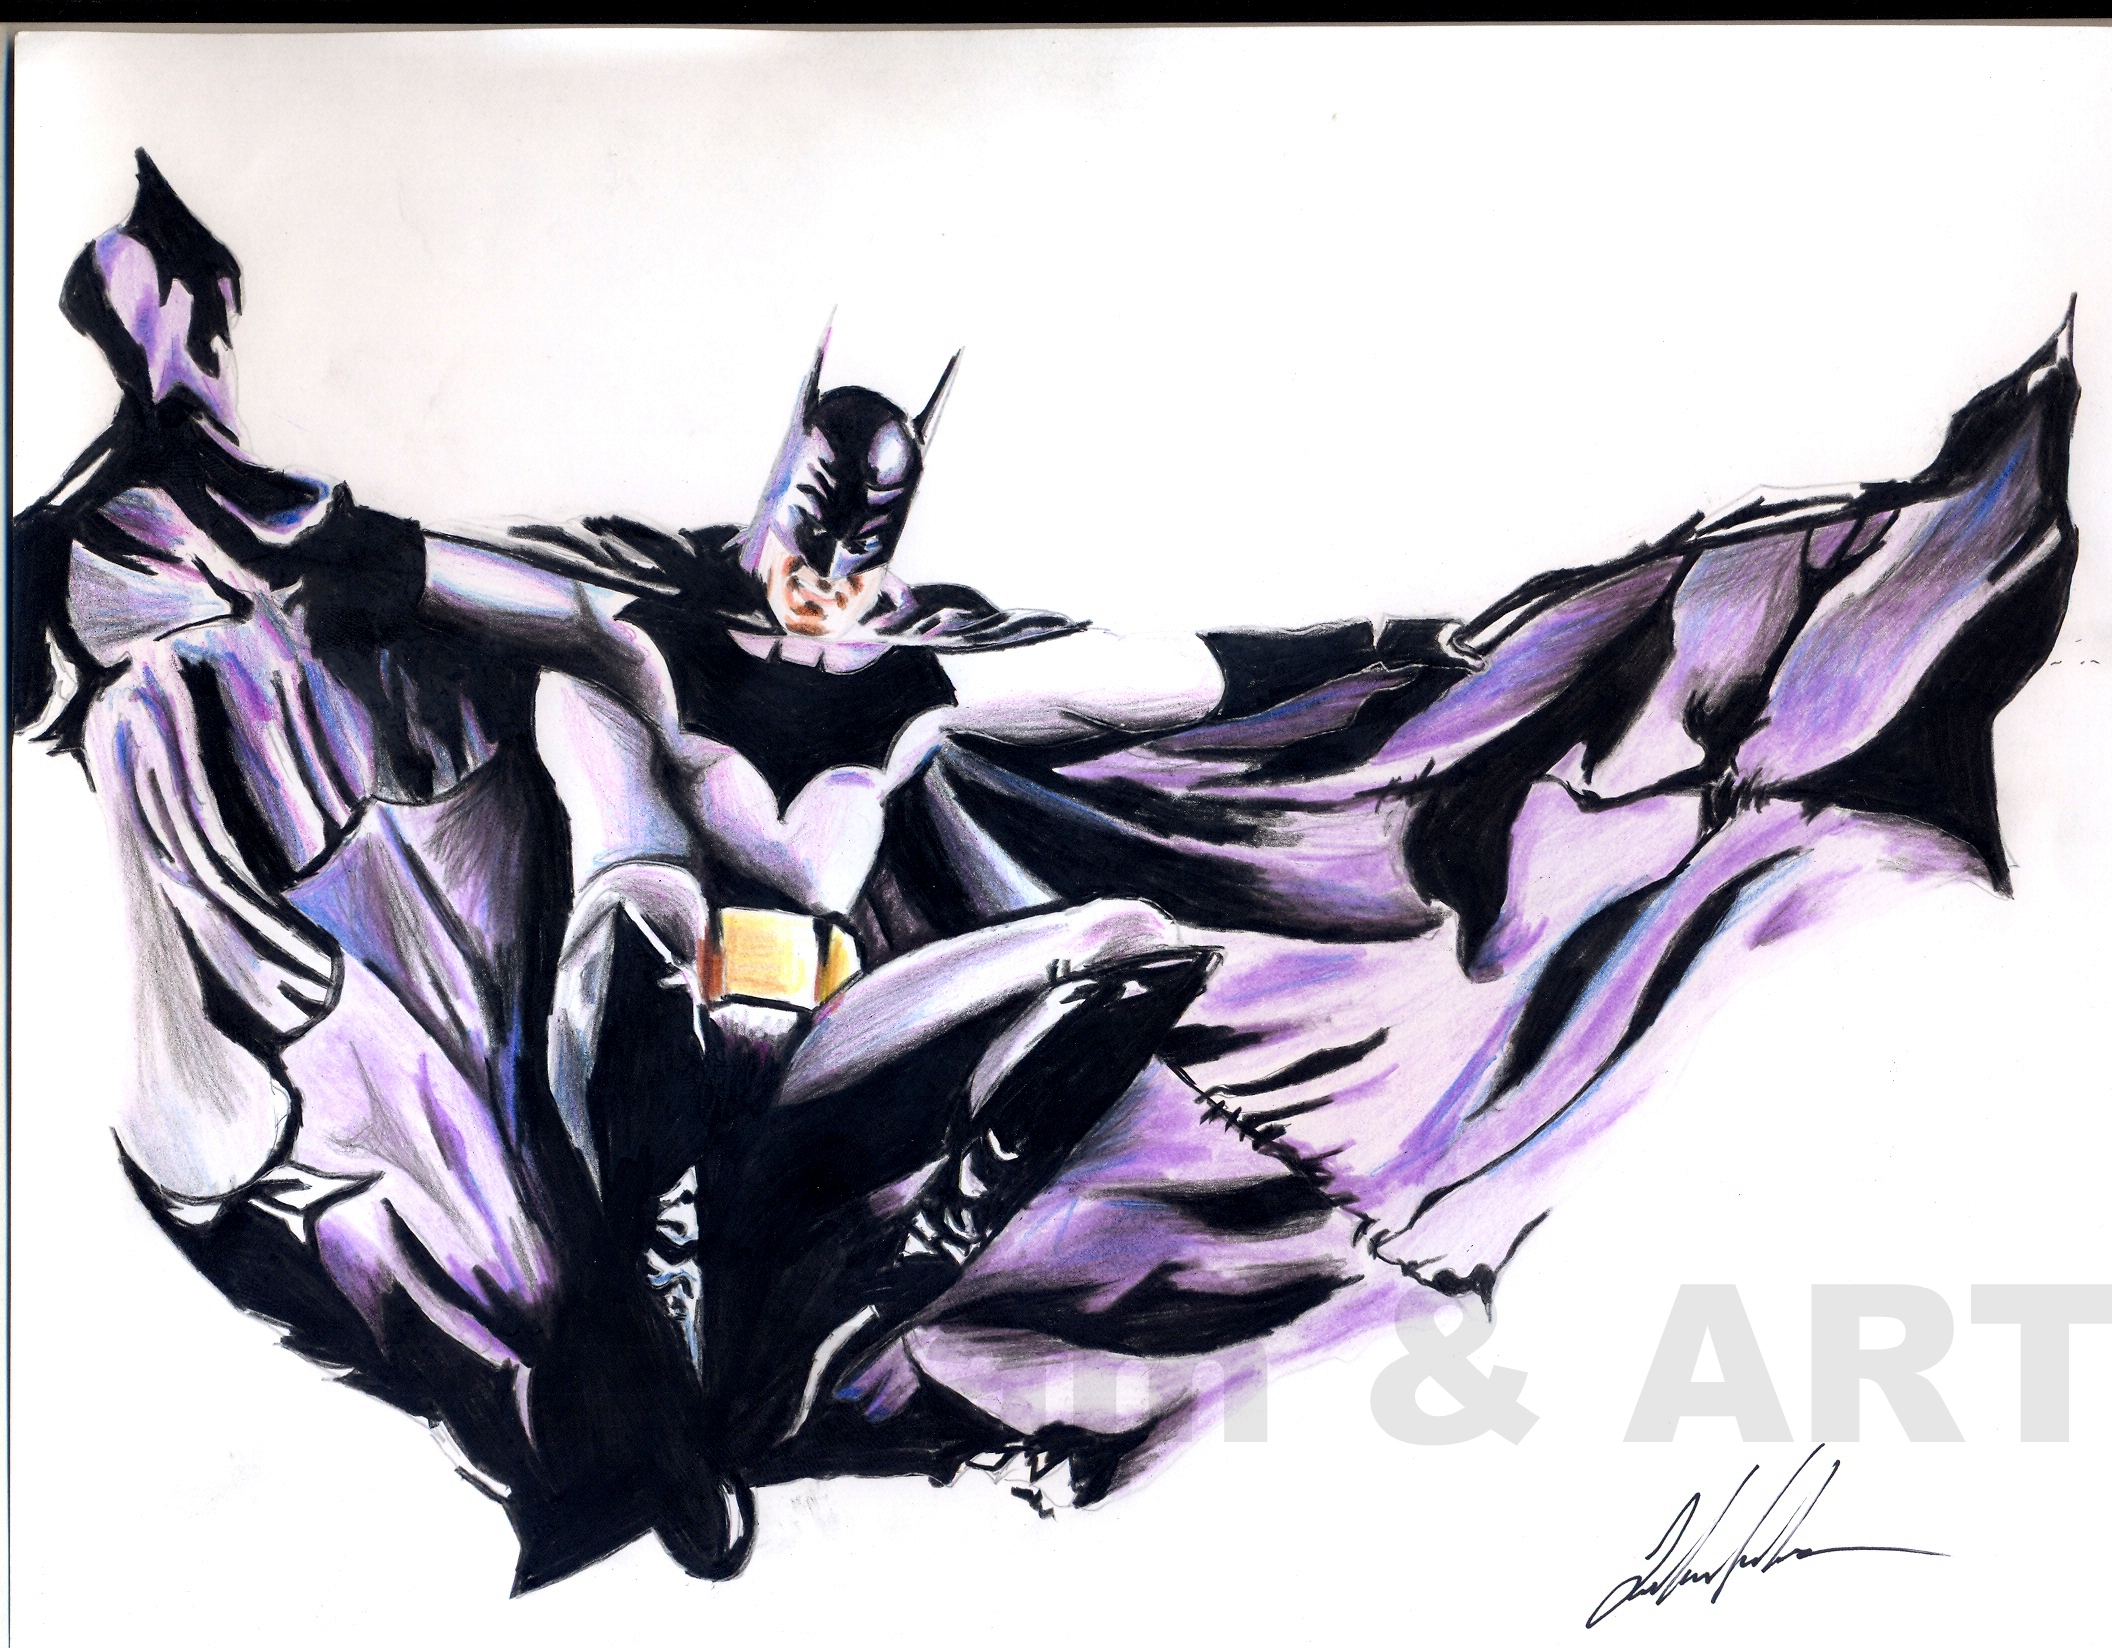 Alex Ross 'Batman' by DreamandArt on DeviantArt